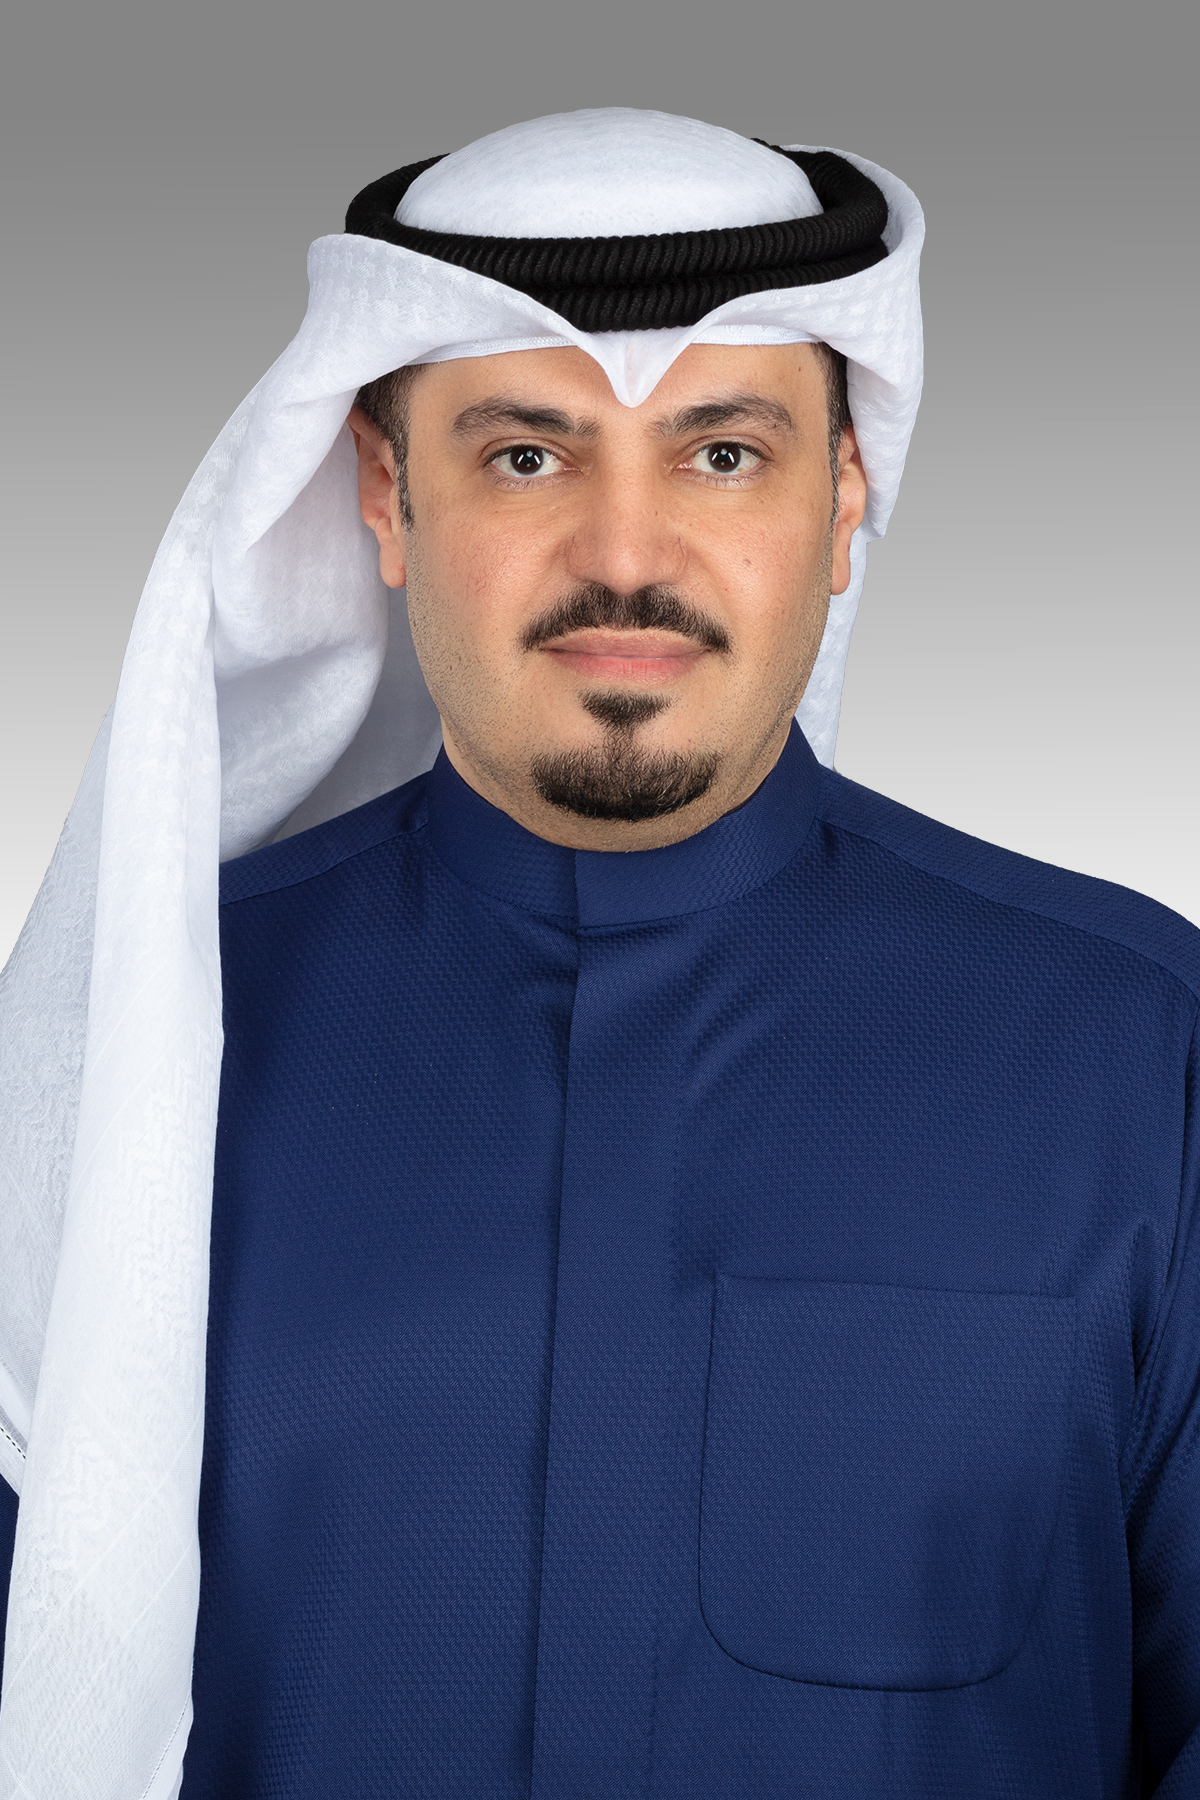 هشام الصالح يوجه سؤالا إلى وزير الصحة